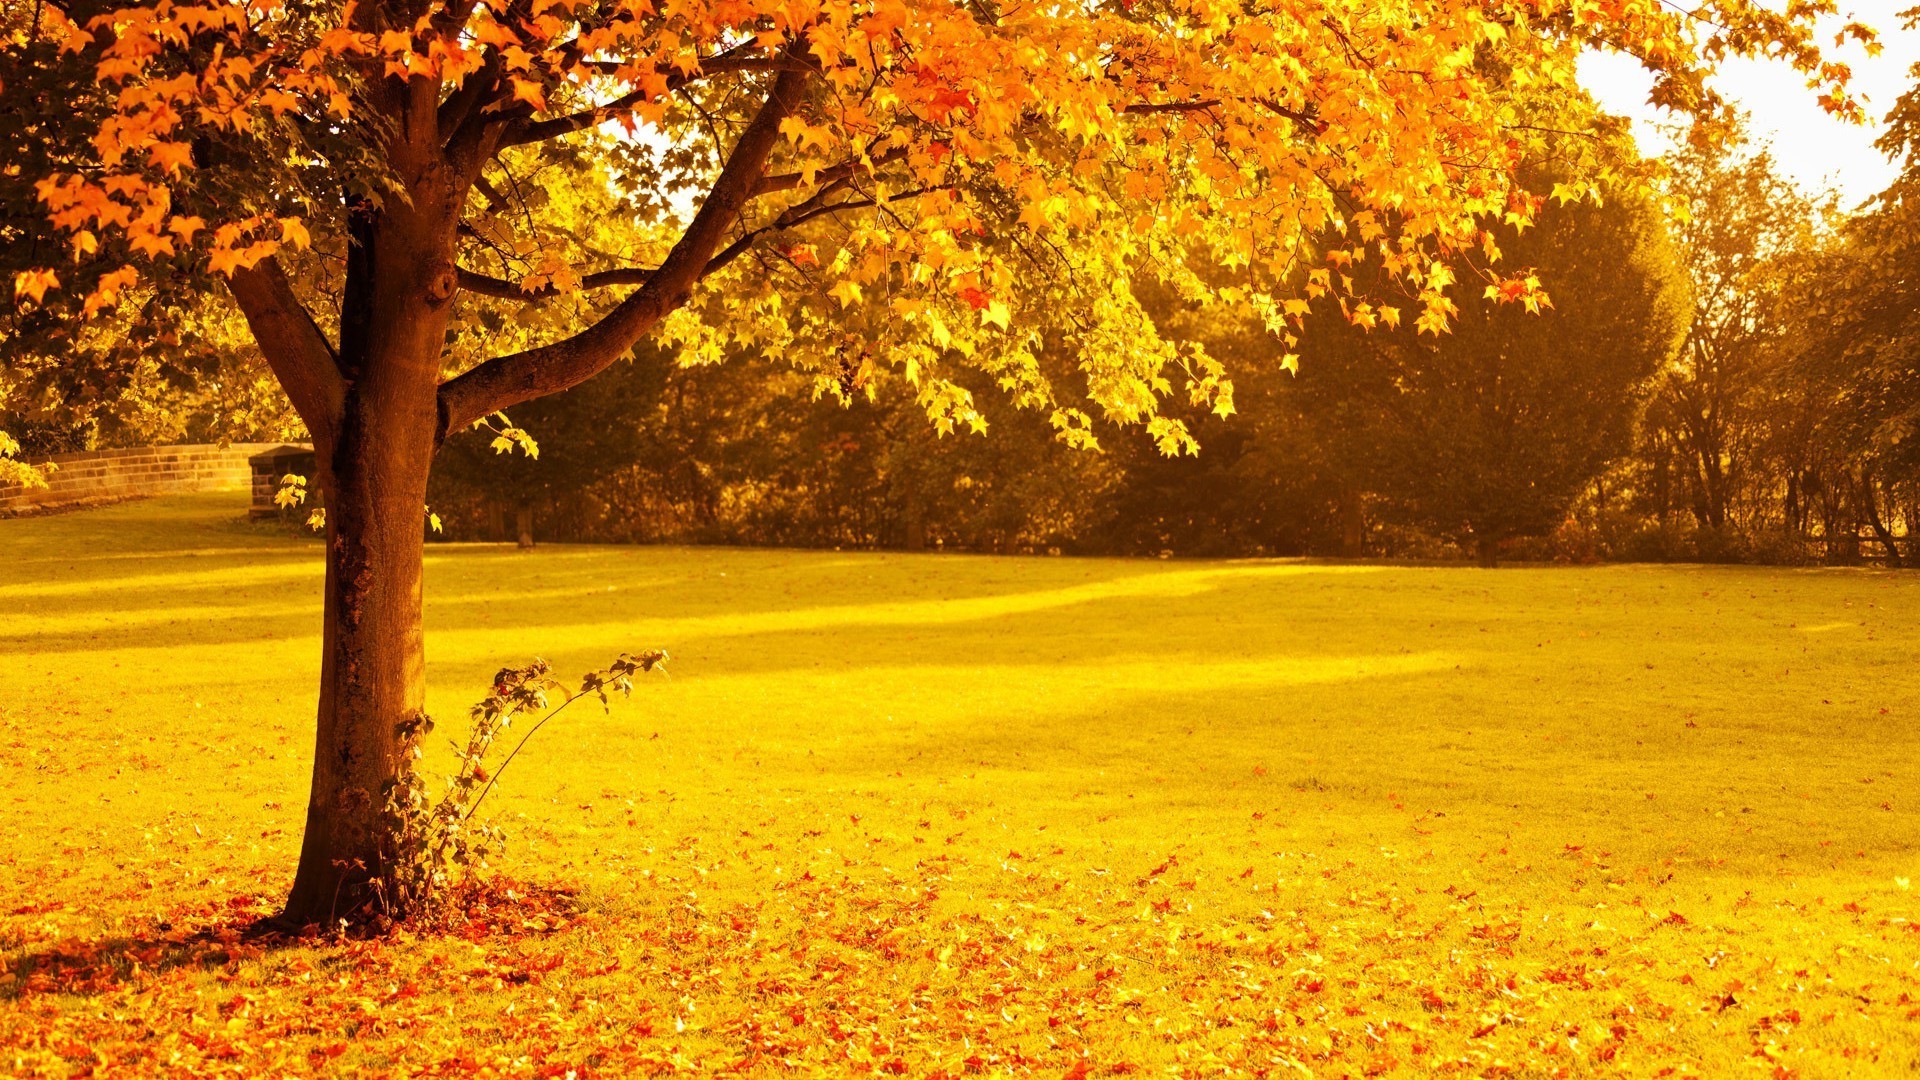 осень осень дерево лист парк кленовый древесины природа сезон пейзаж золото на открытом воздухе руководство живописный